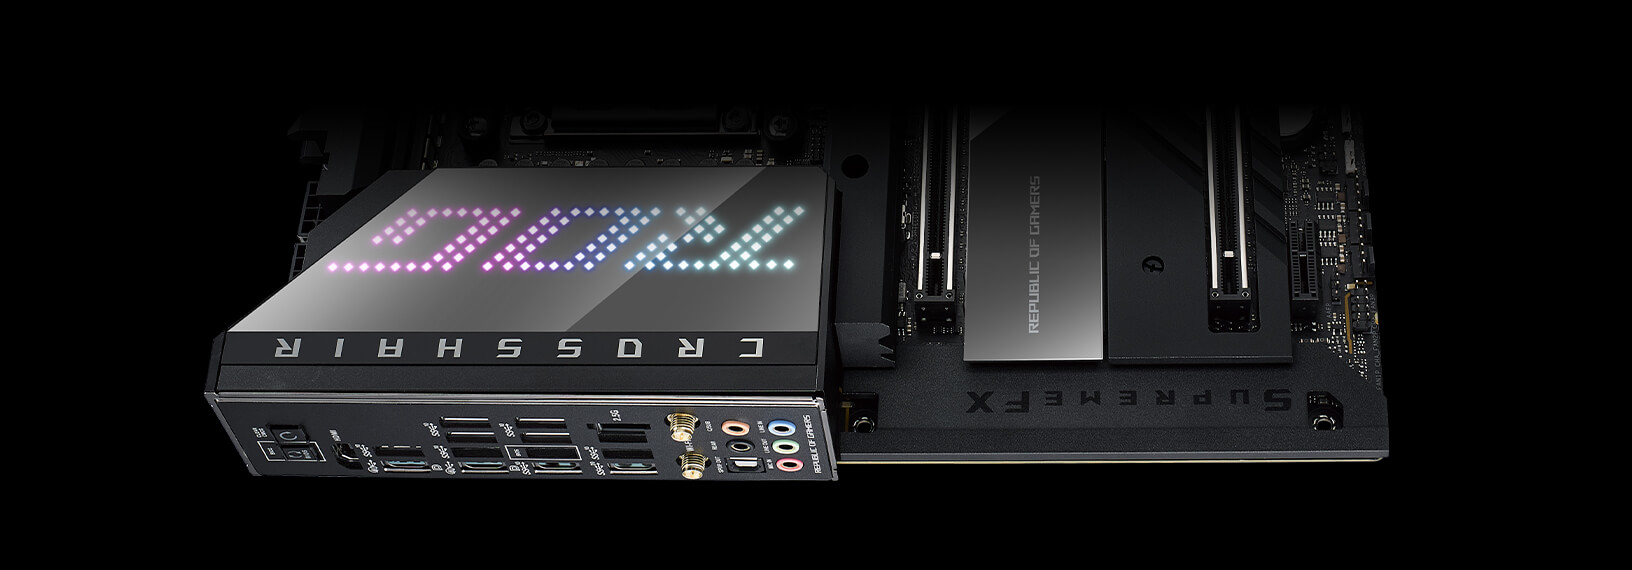 Das ROG Crosshair X670E Hero Mainboard verfügt über SupremeFX Audio.